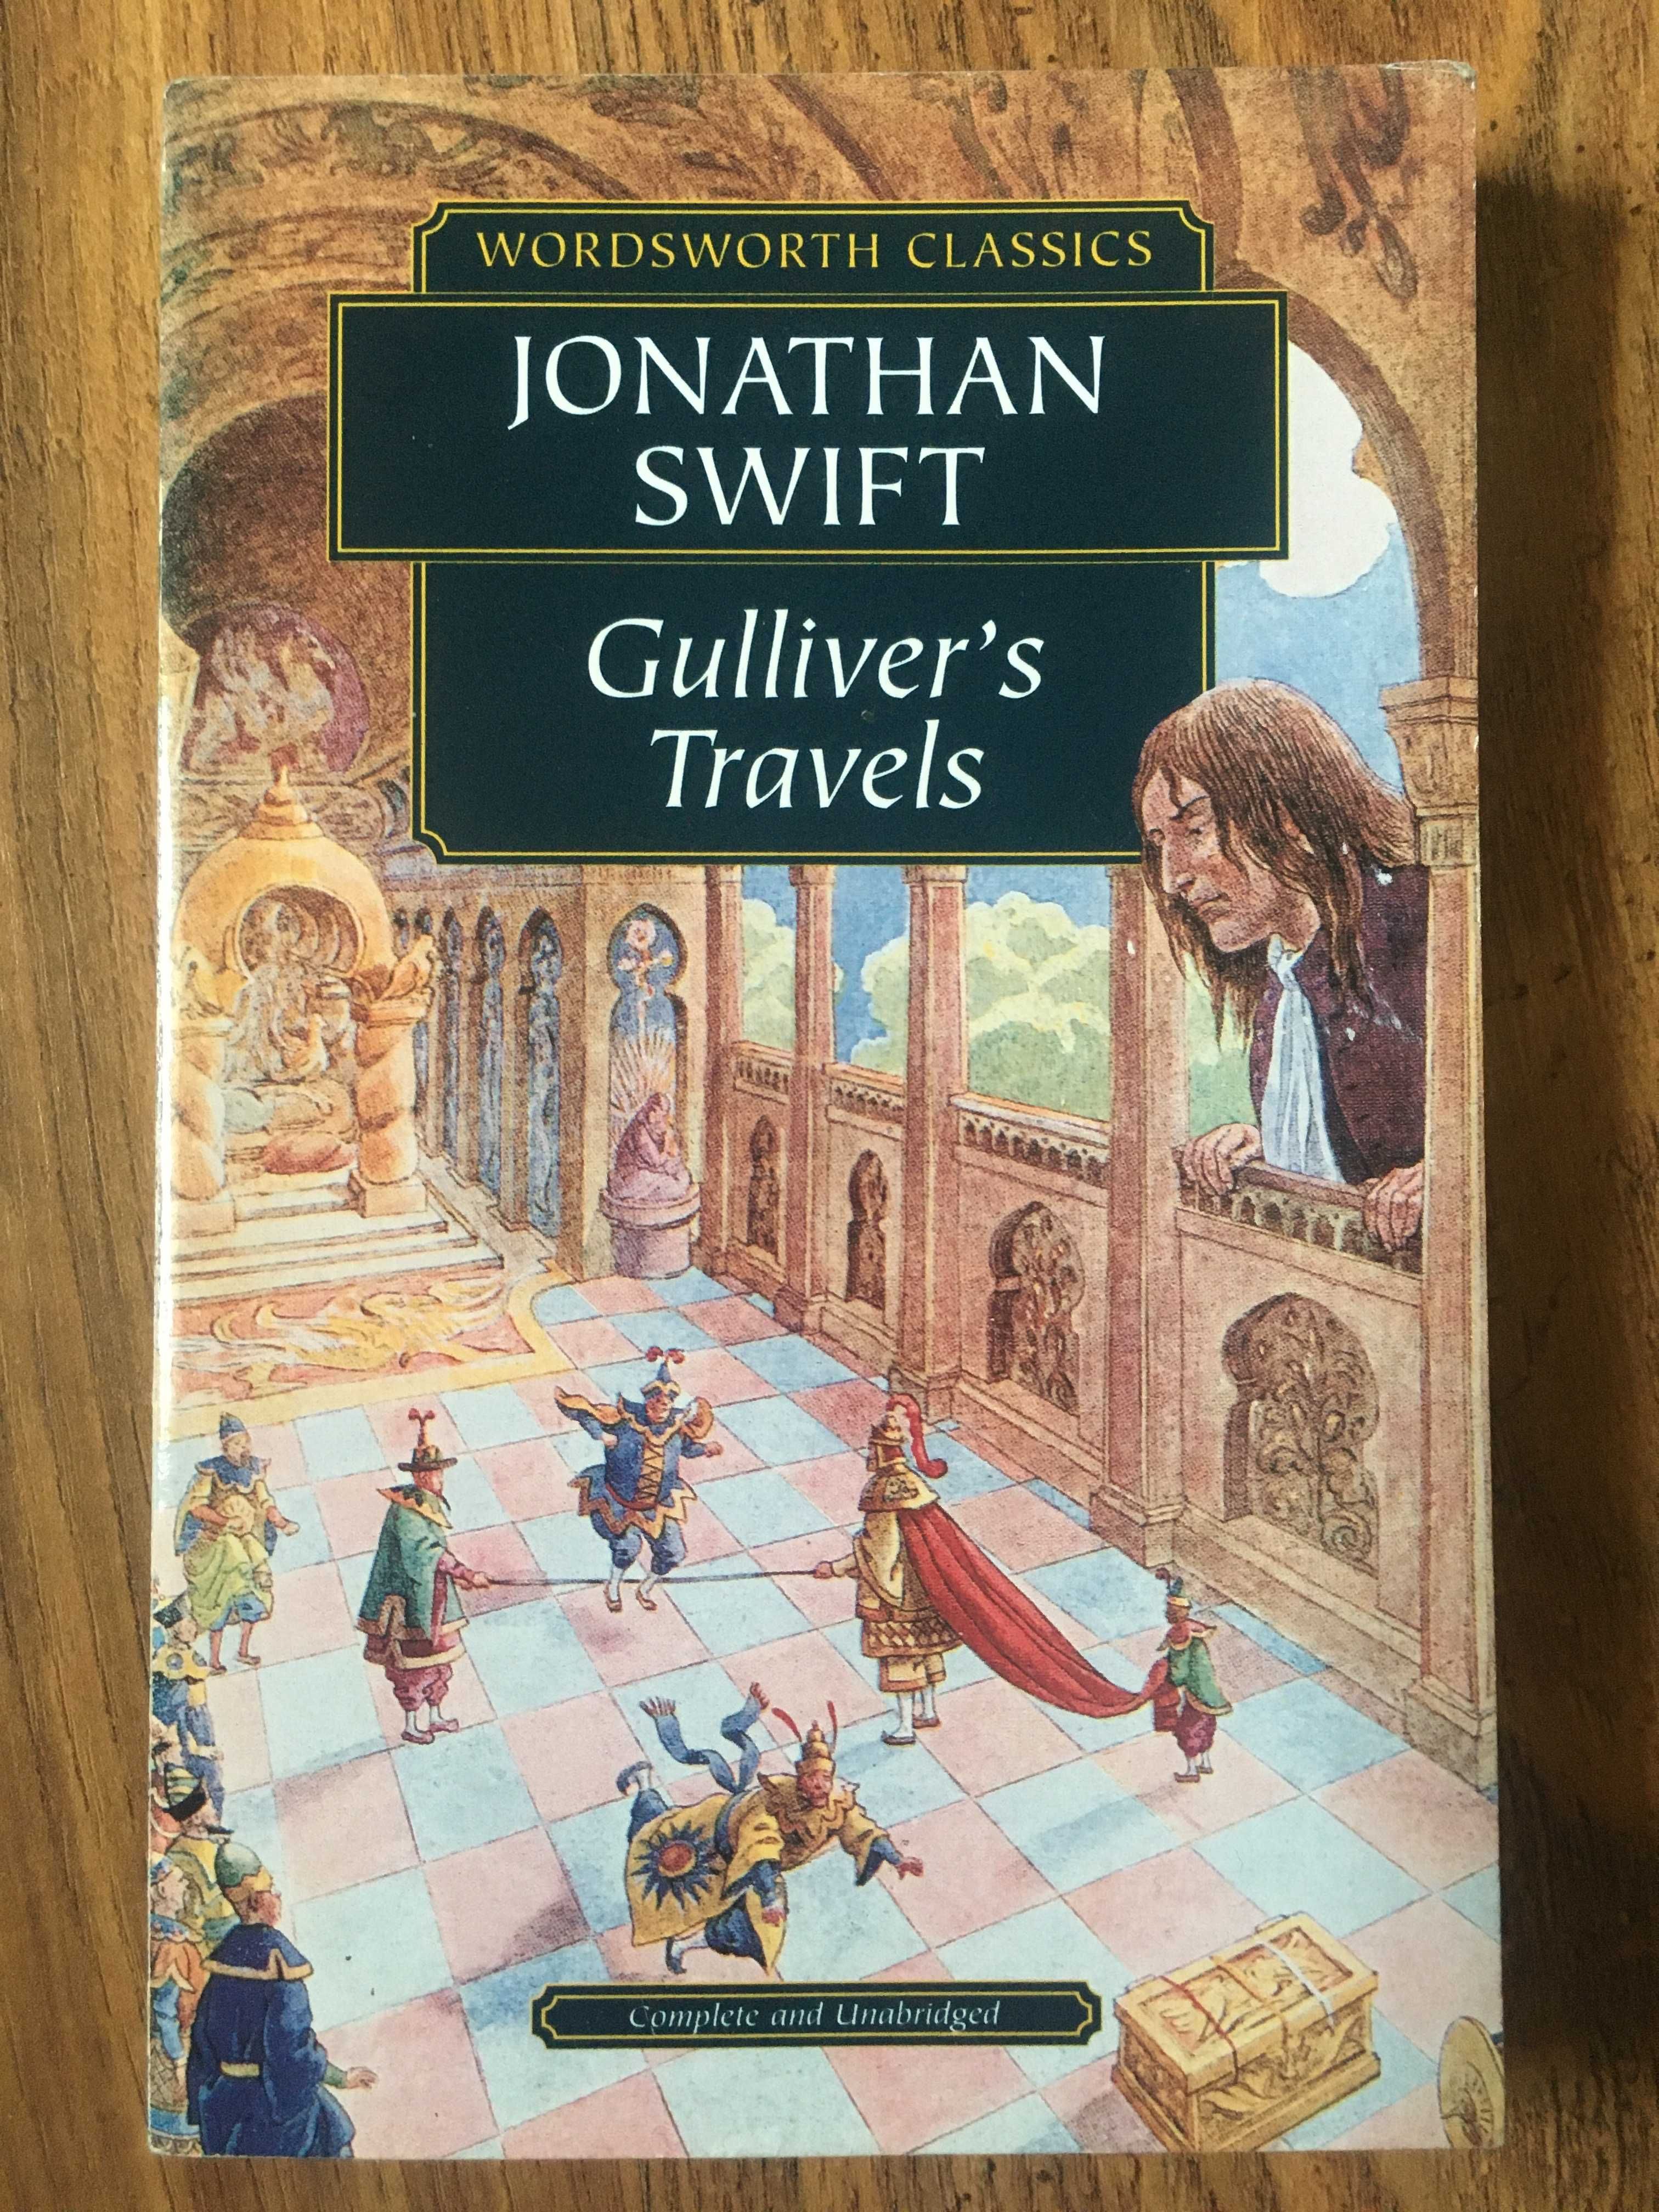 Jonathan Swift "Gulliver's Travels" (angielski.)